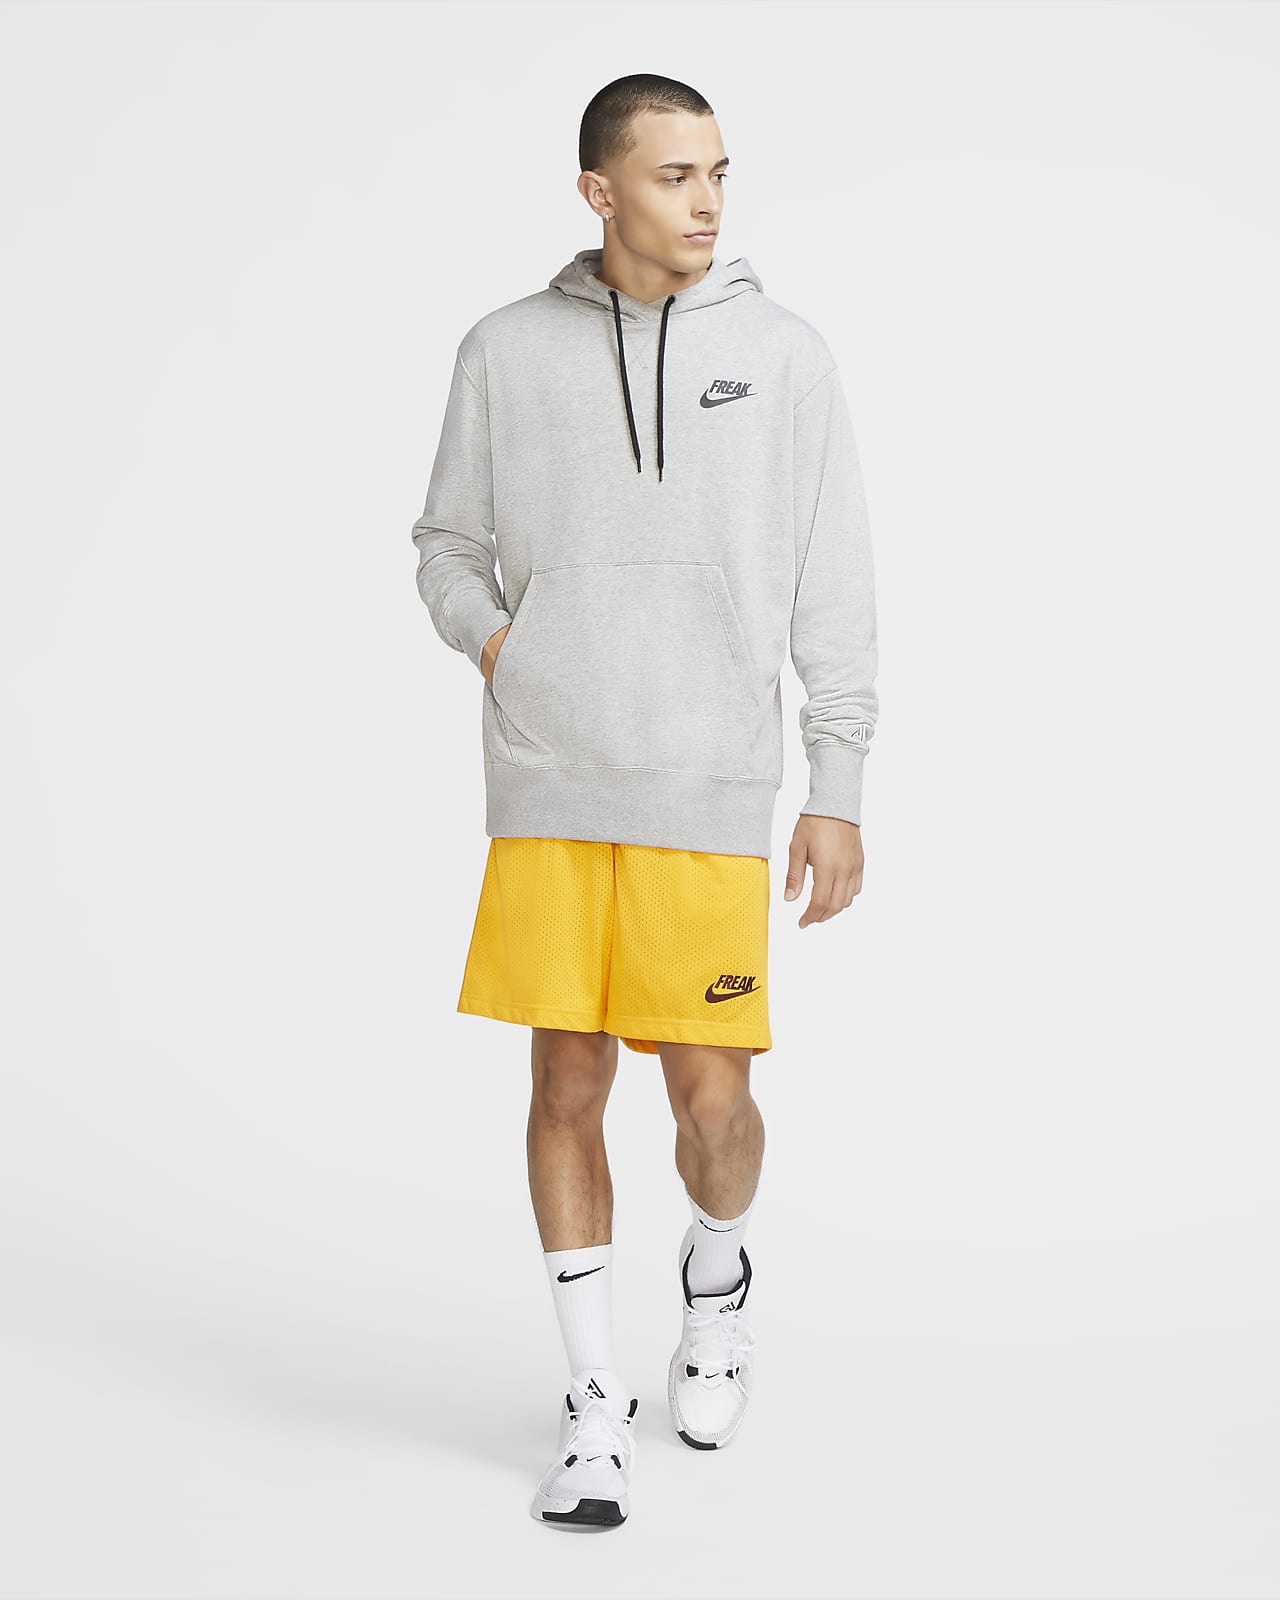 Giannis Men's Nike Pullover Hoodie 